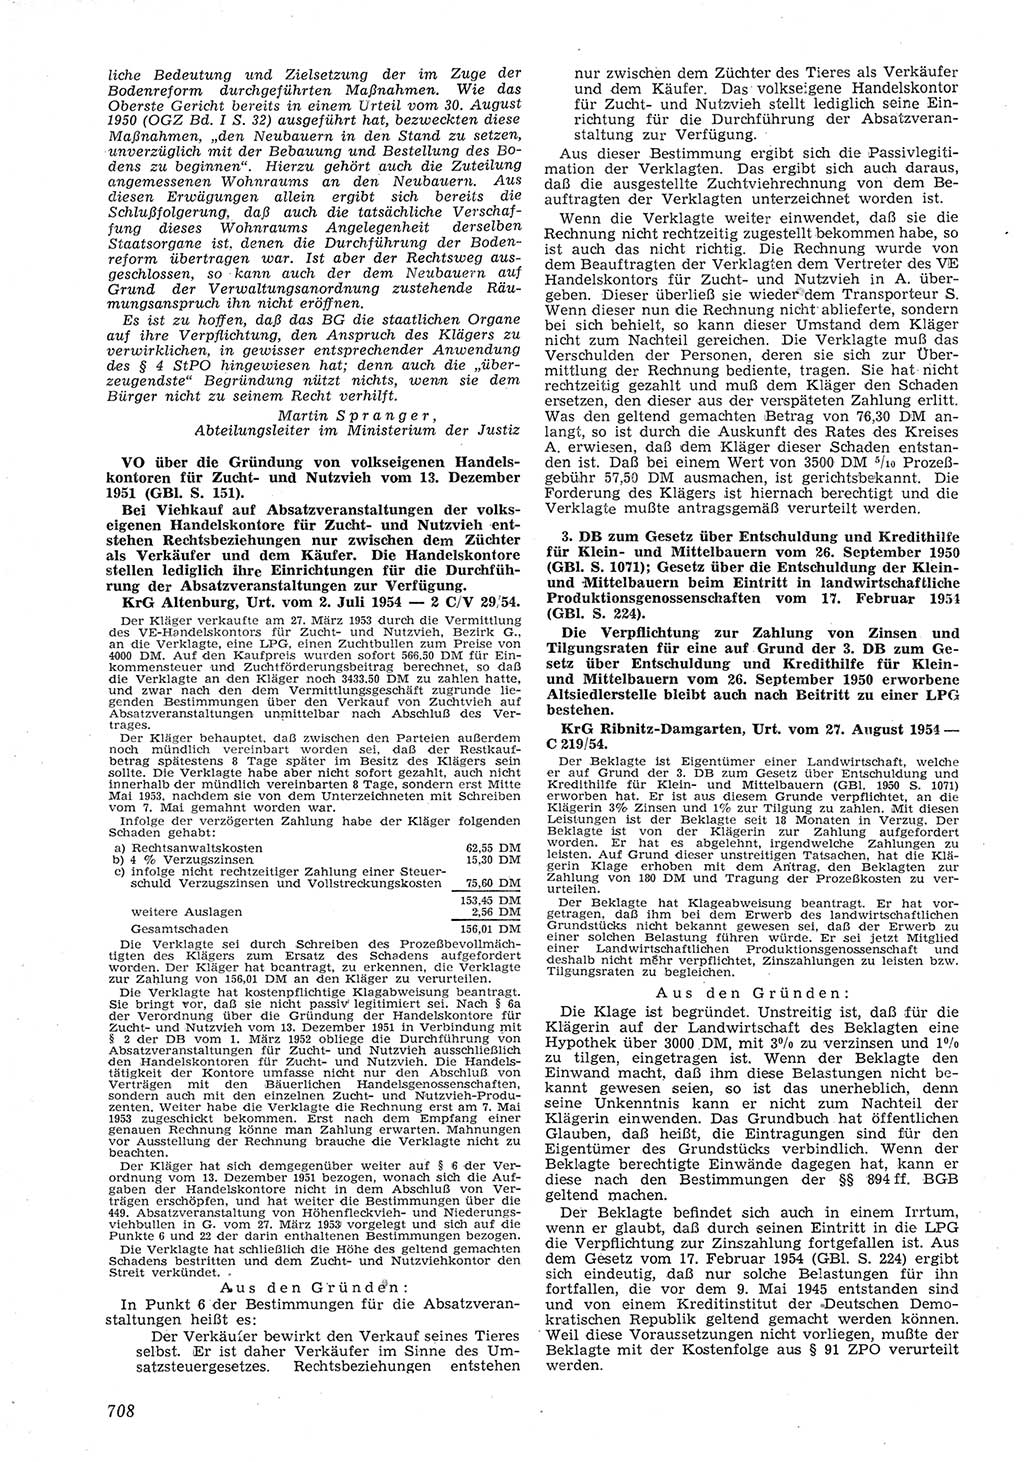 Neue Justiz (NJ), Zeitschrift für Recht und Rechtswissenschaft [Deutsche Demokratische Republik (DDR)], 8. Jahrgang 1954, Seite 708 (NJ DDR 1954, S. 708)